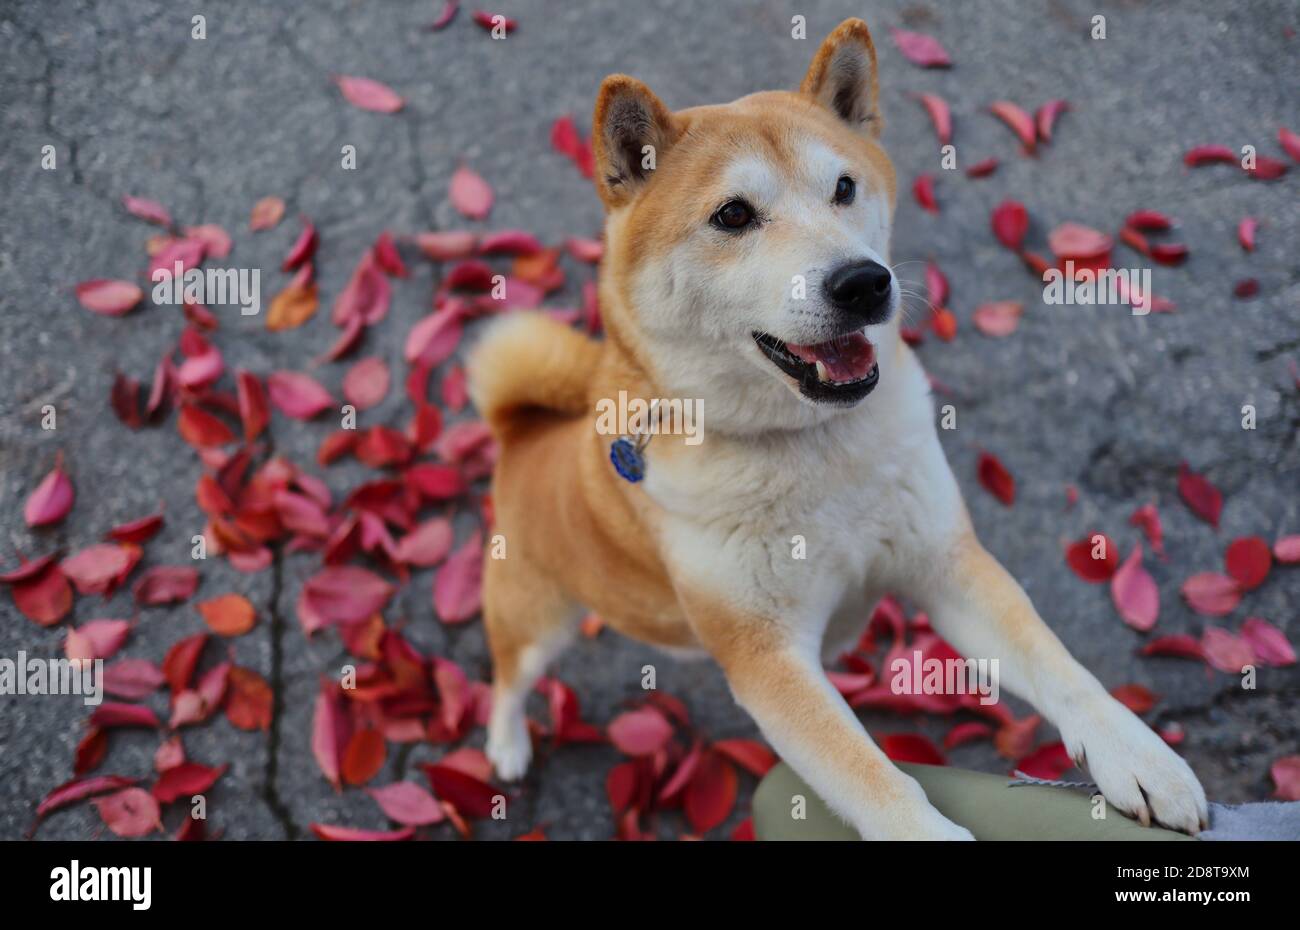 L'énergique Shiba Inu se tient sur deux jambes sur les feuilles pourpre tombées pendant la saison d'automne. Adorable chien d'or à l'extérieur. Banque D'Images